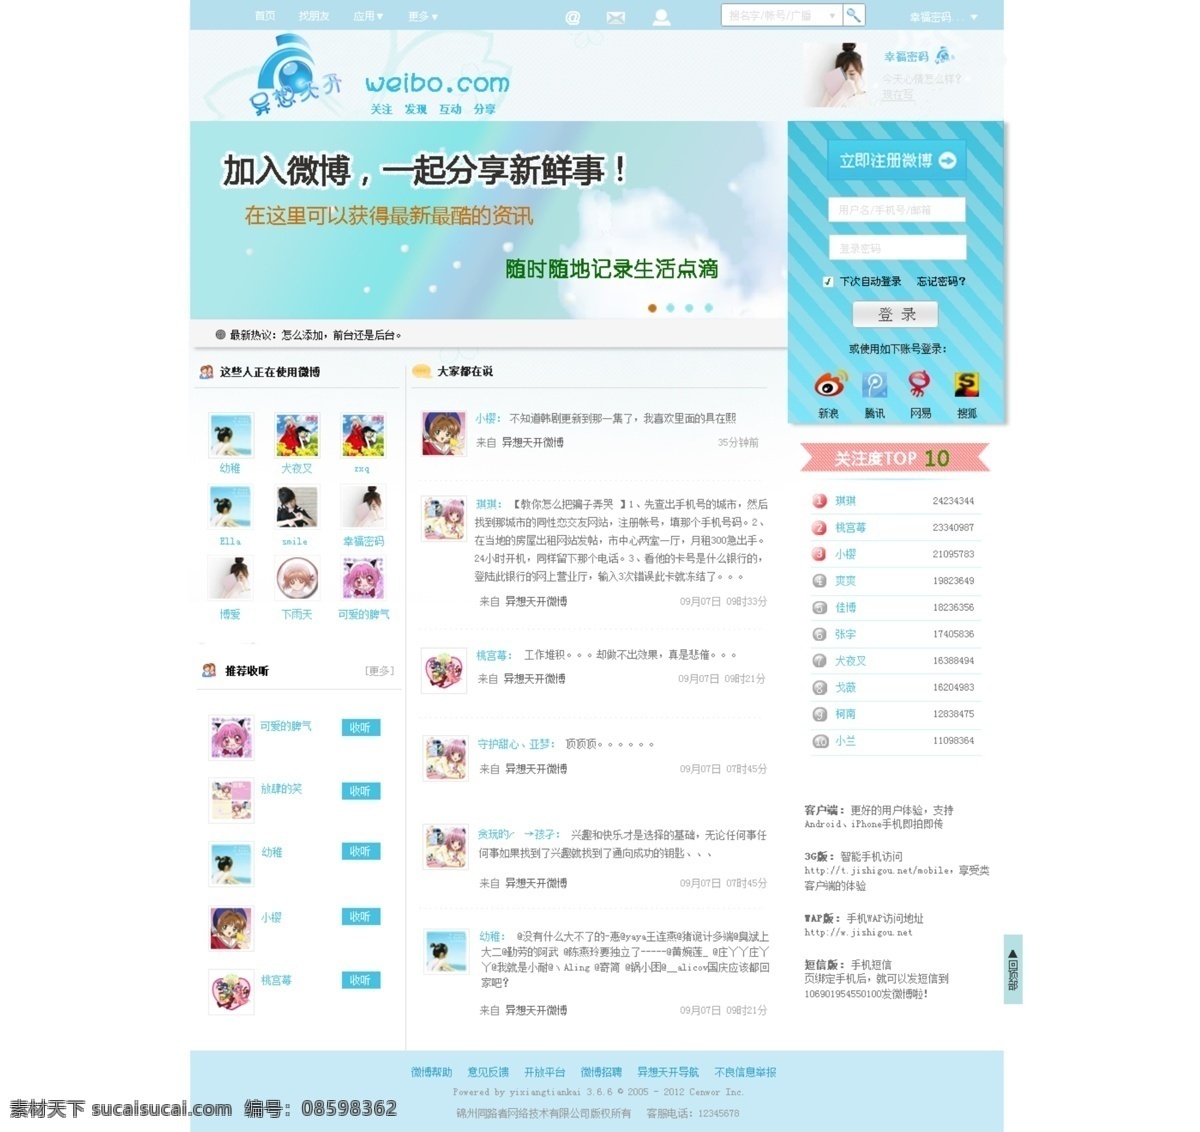 微博网页 微博 网页 背景 中文模板 网页模板 源文件